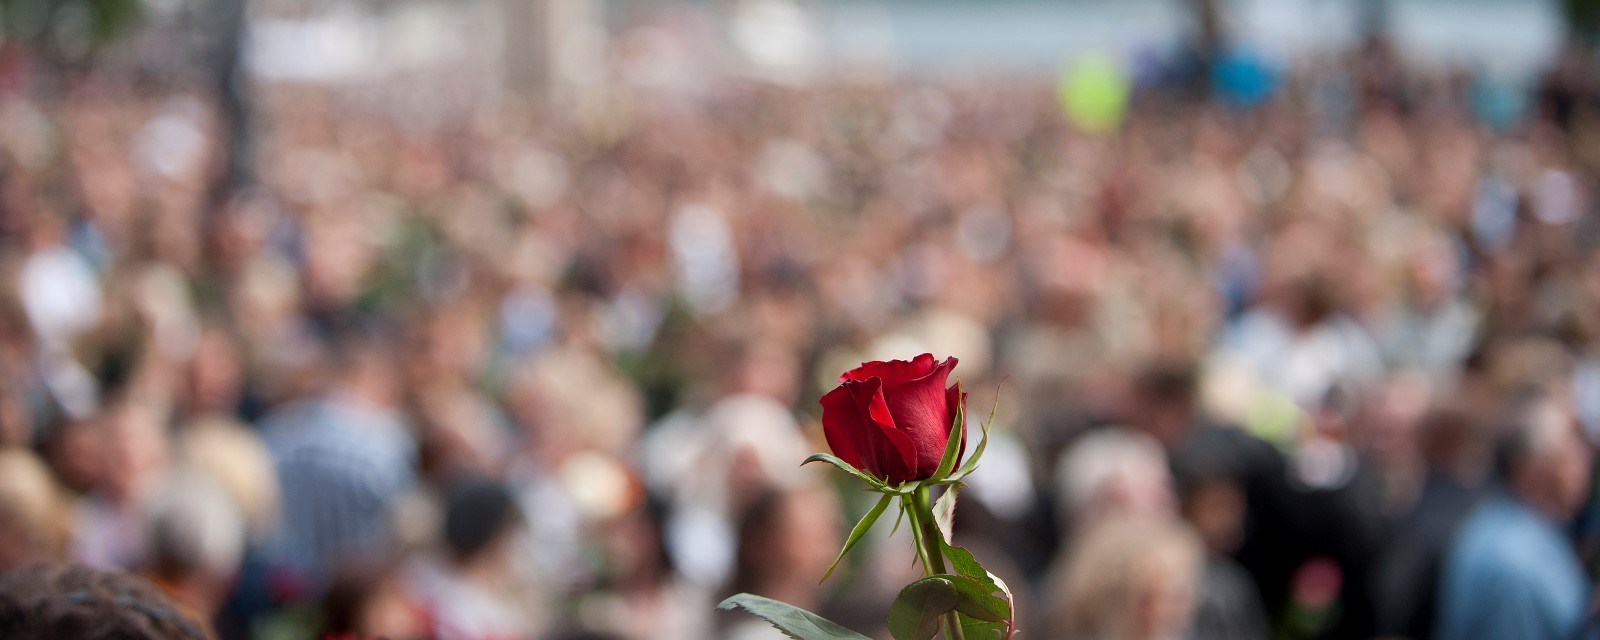 En rose holdes høyt opp over et folkehav